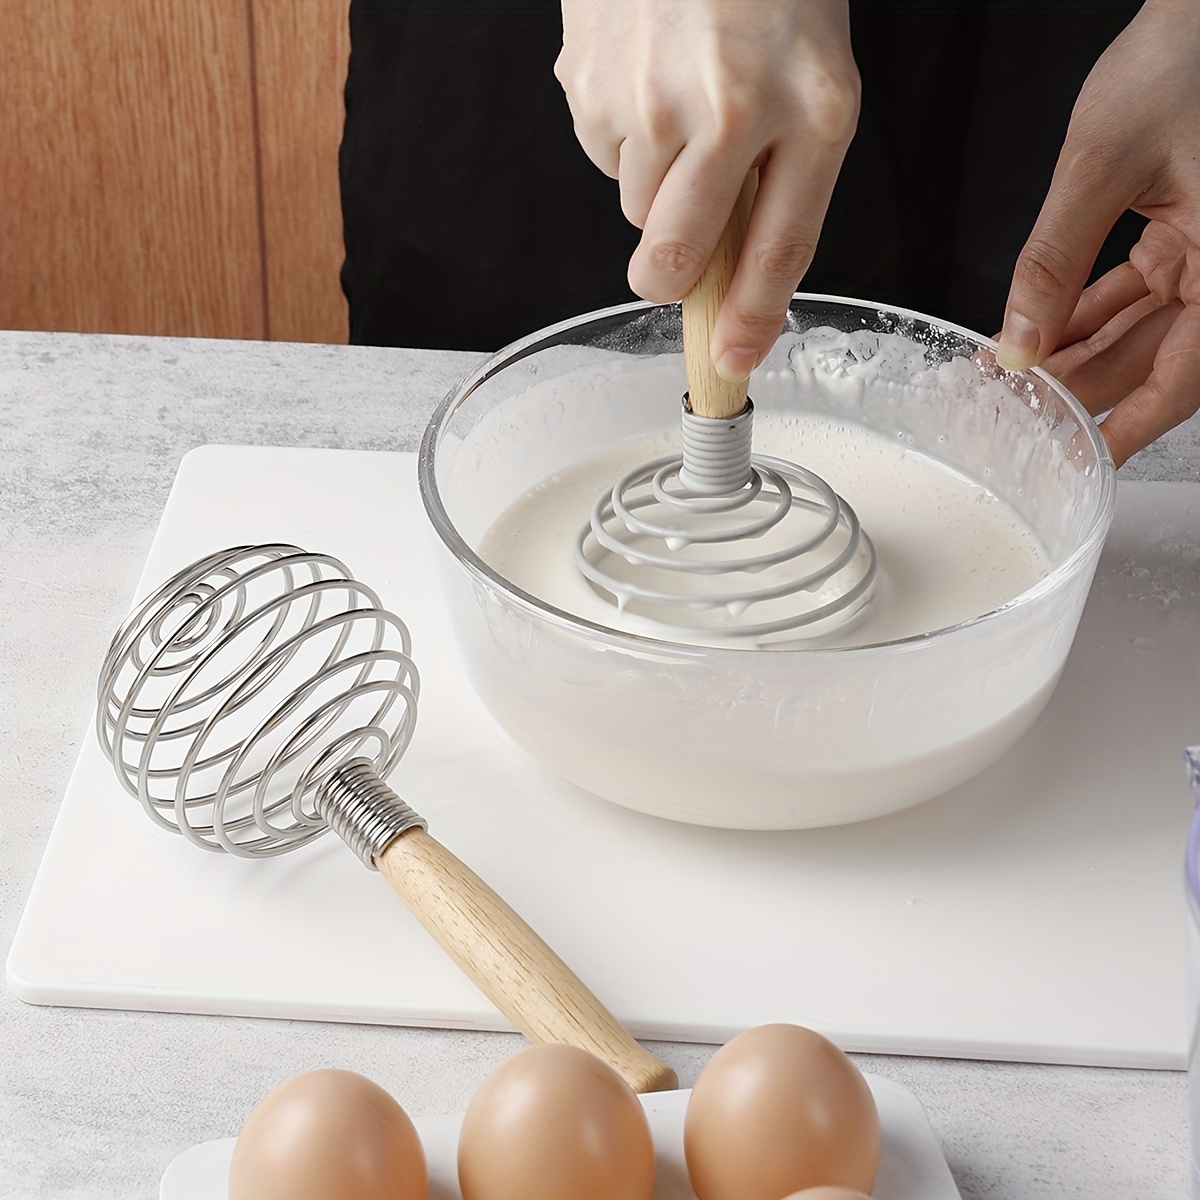 Varillas para mezclar huevos y crema, agitador de pastel de harina